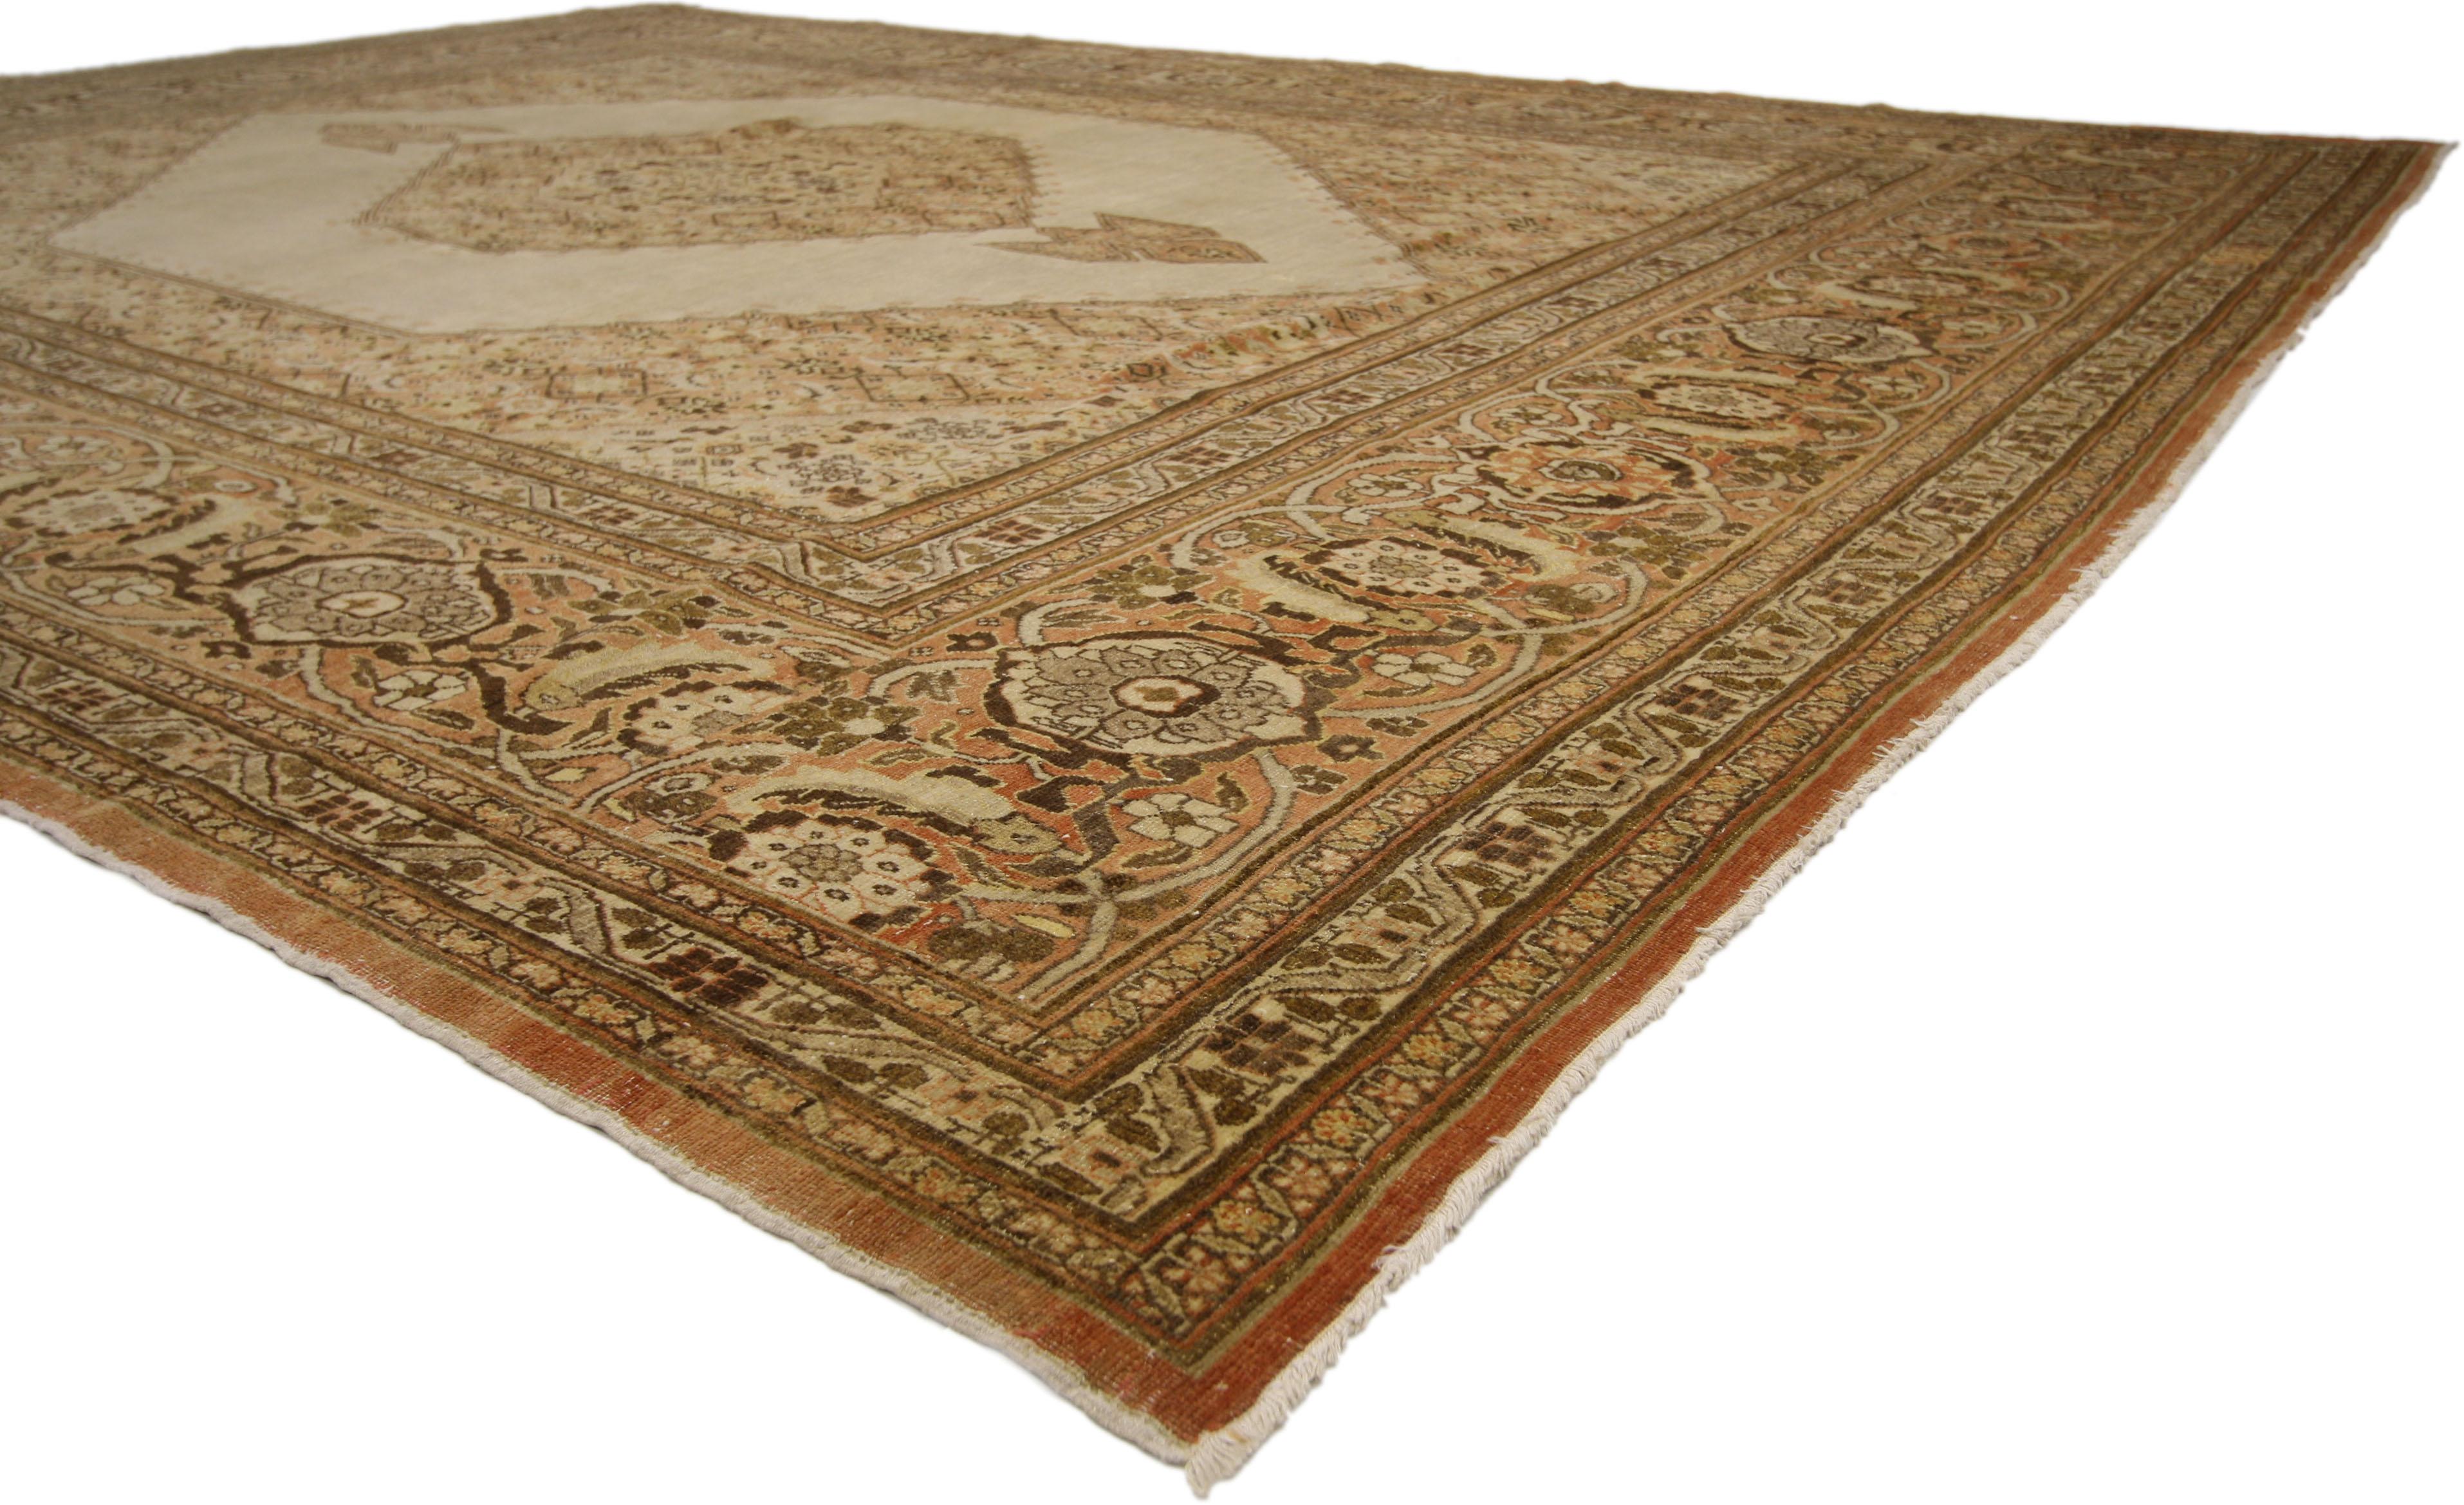 74938 Haji Khalili Antique Persian Tabriz Rug, 09'05 x 12'07. 

Les tapis persans Tabriz de Haji Khalili sont réputés pour leur qualité exceptionnelle et leurs motifs complexes. Ils proviennent de Tabriz, en Iran, centre historique du tissage de